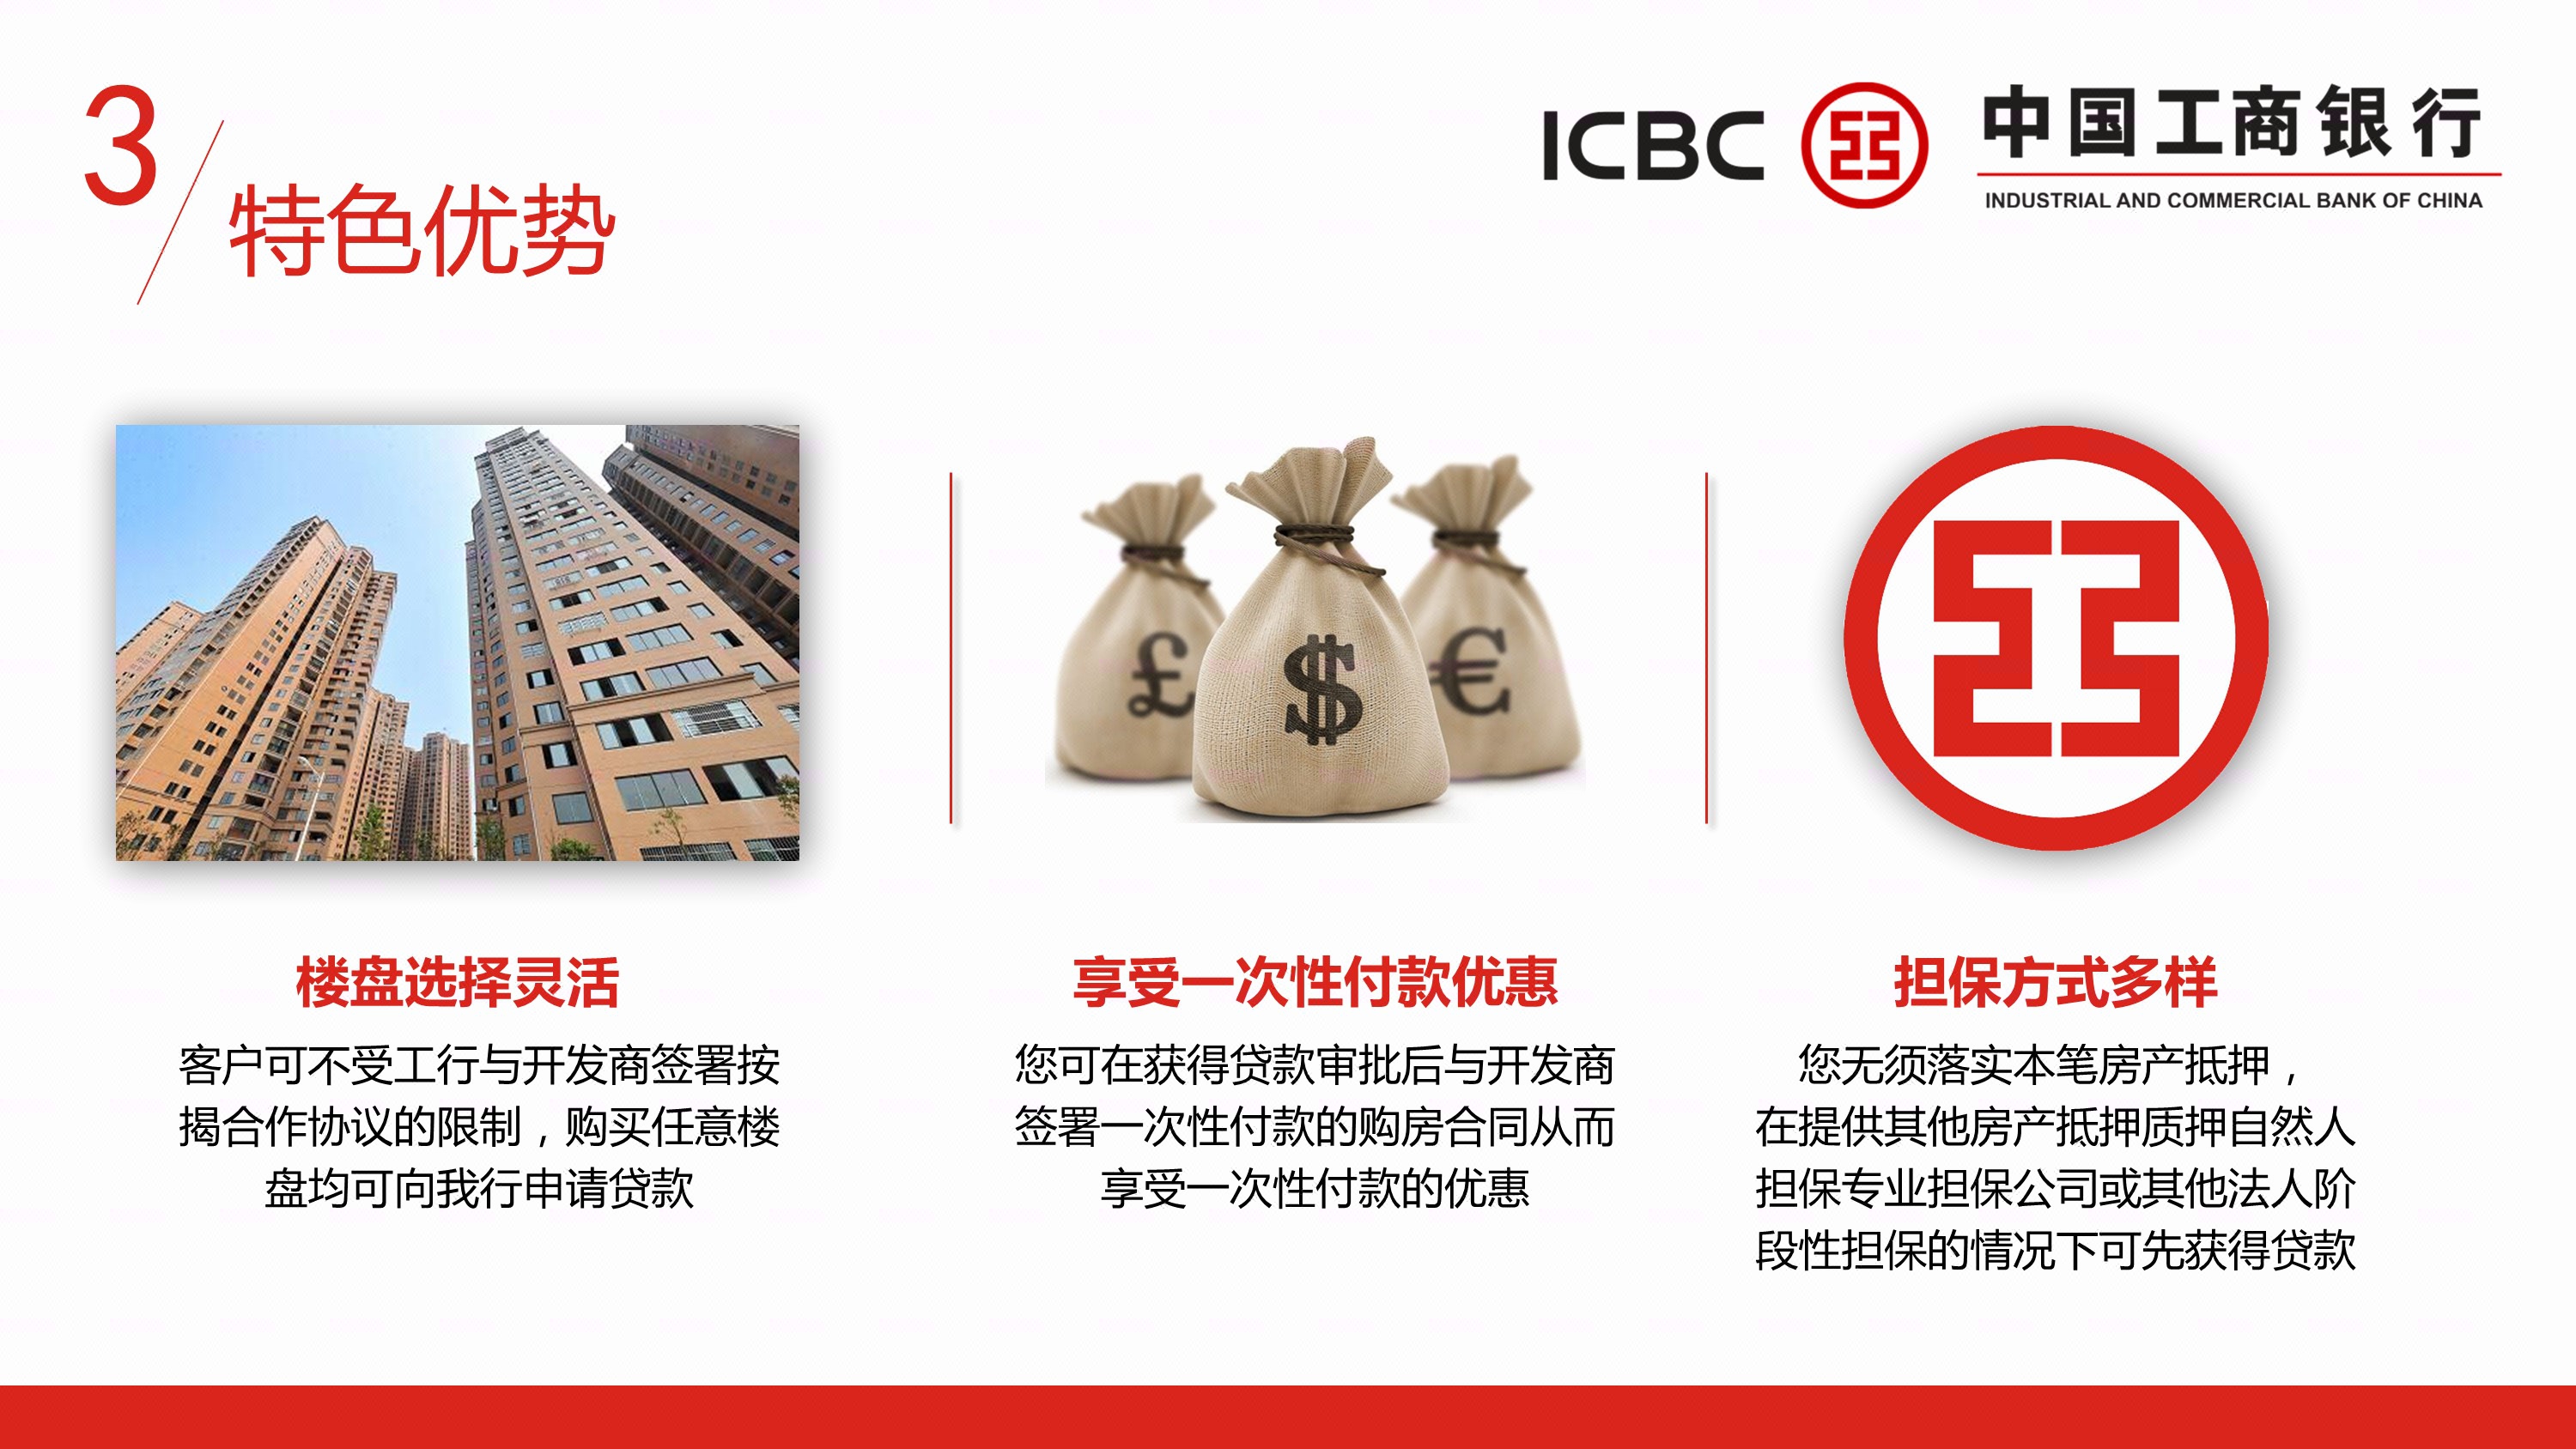 中国工商银行个人贷款业务直客式个人住房贷款